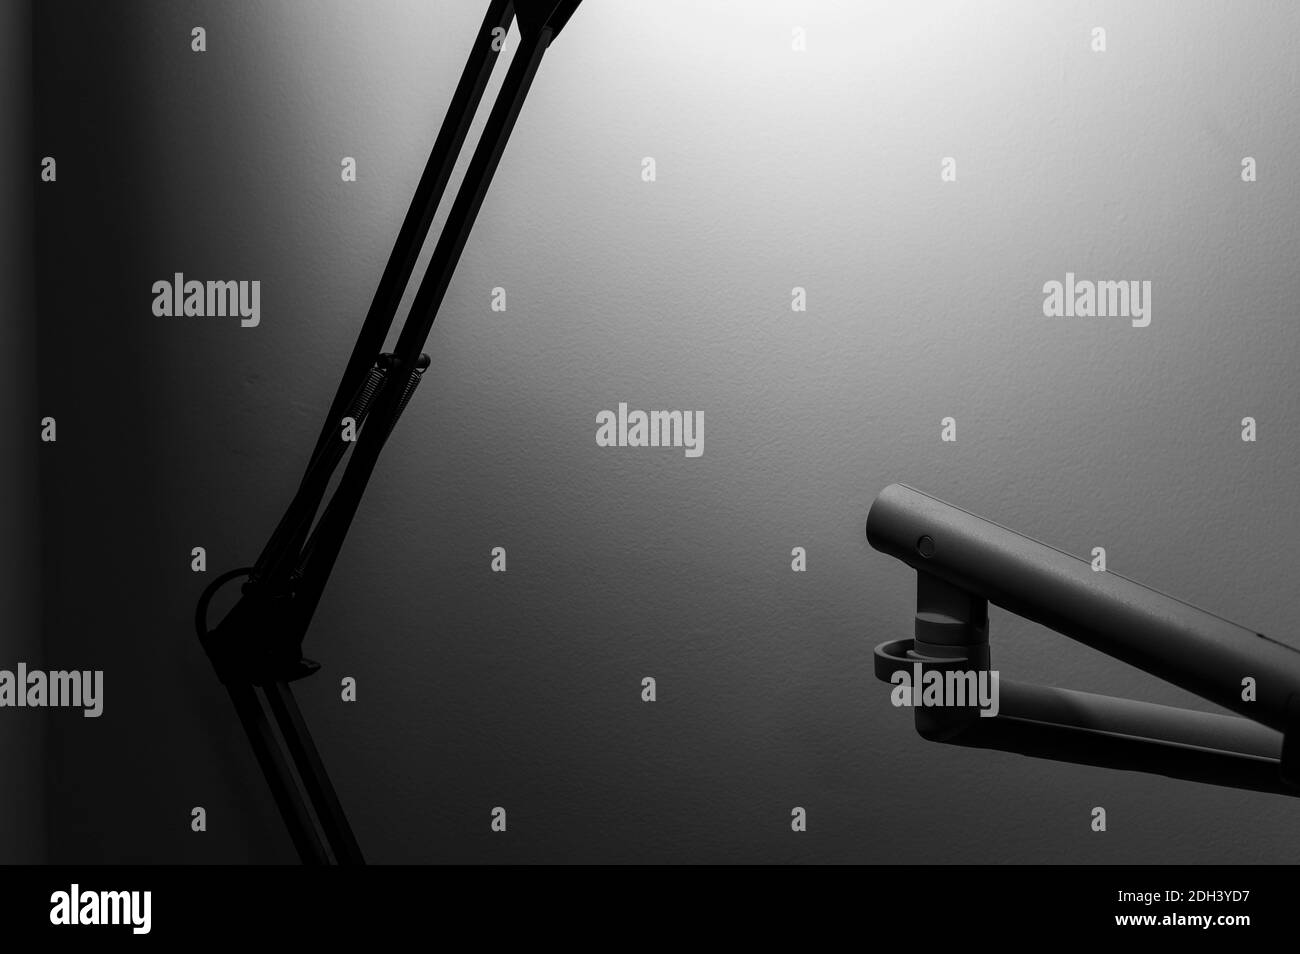 Immagine monocromatica in bianco e nero della lampada da tavolo articolata con le braccia nere in primo piano sfocate e con la lampadina illuminata con la sua ombra sulla parete. Foto Stock